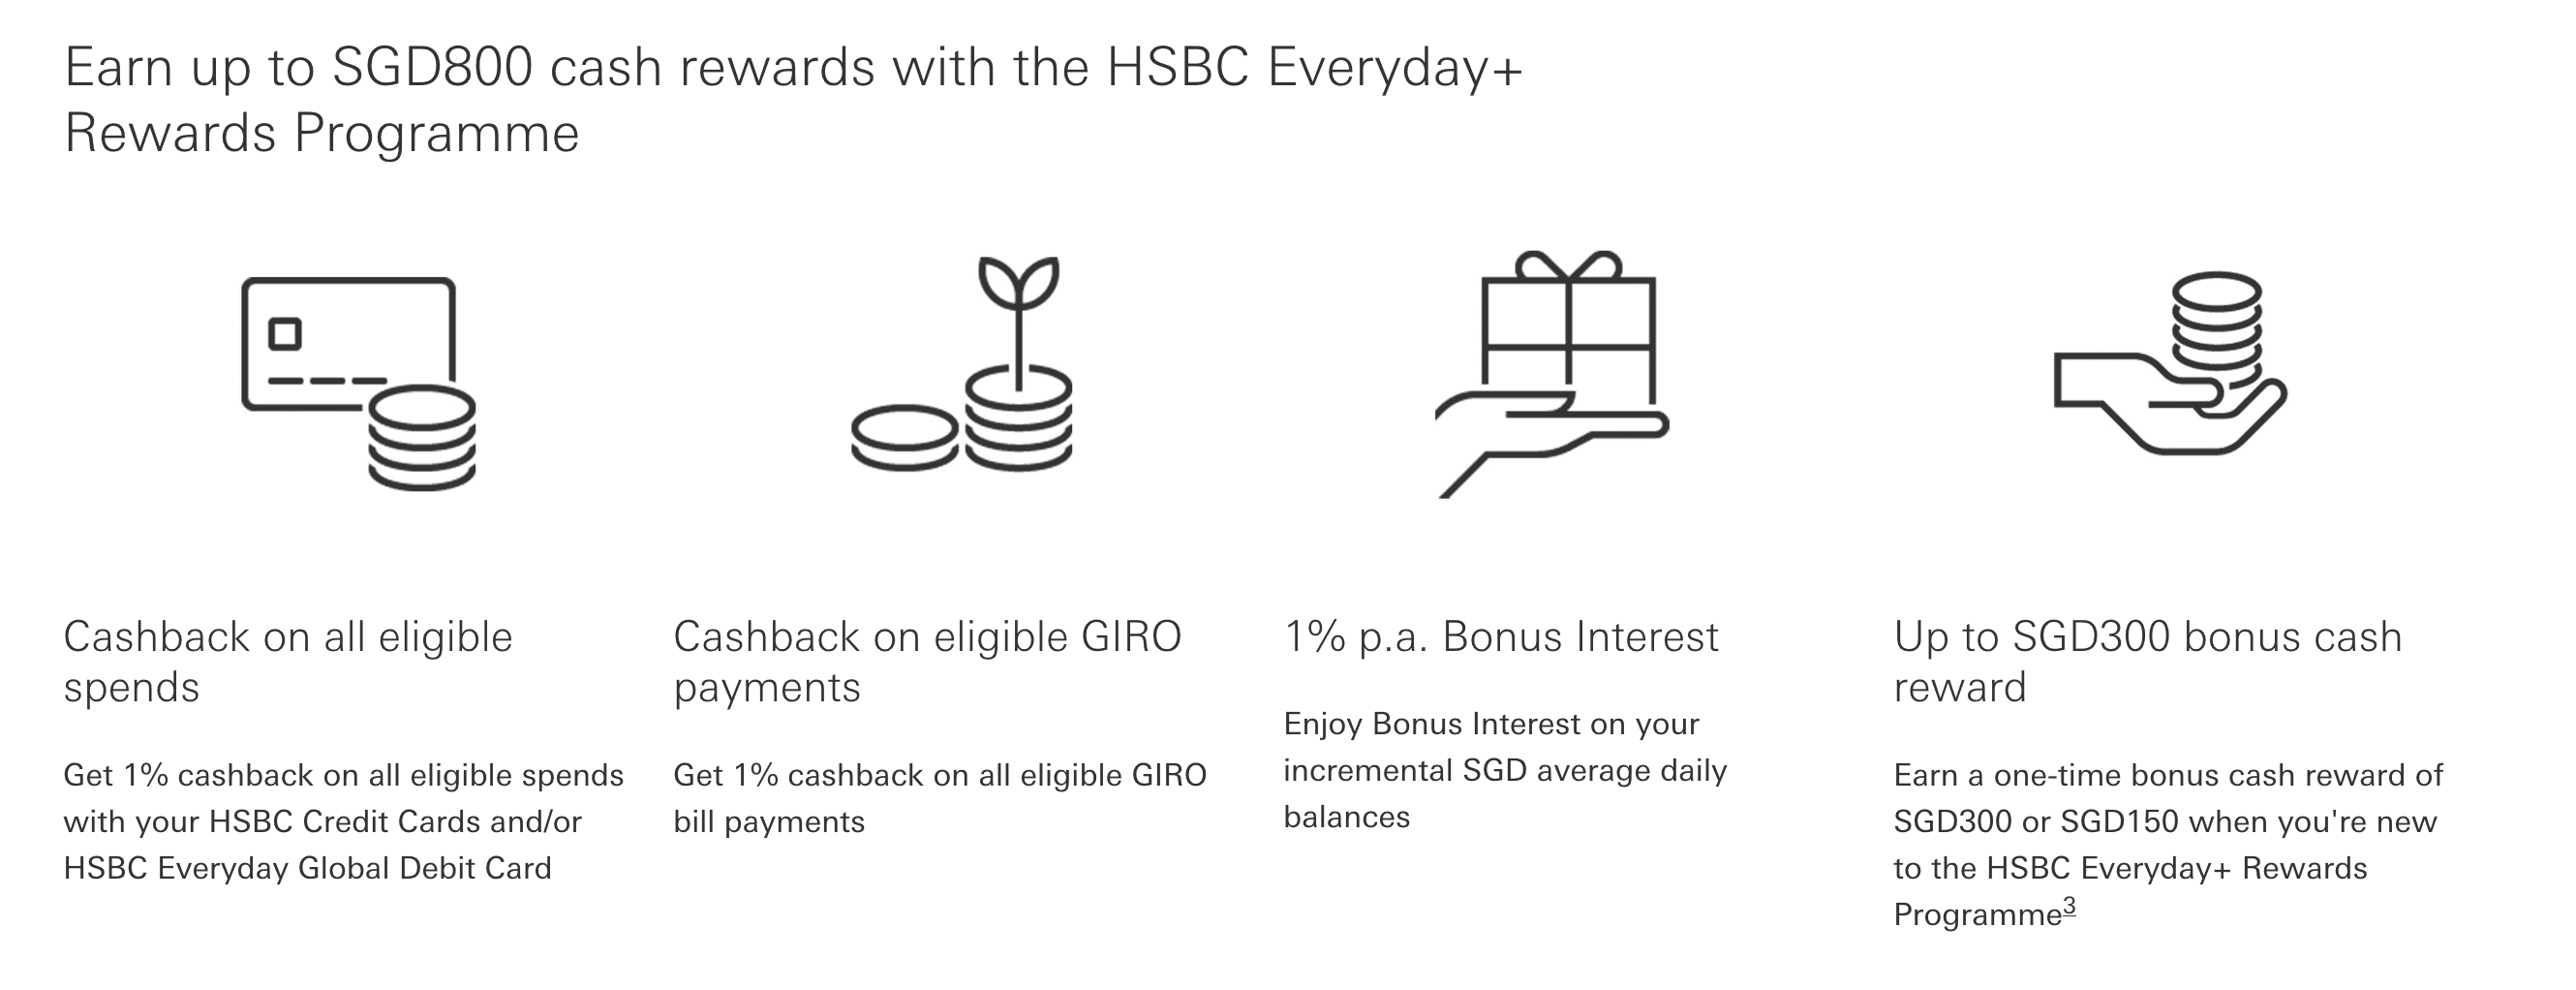 HSBC Everyday+ Rewards